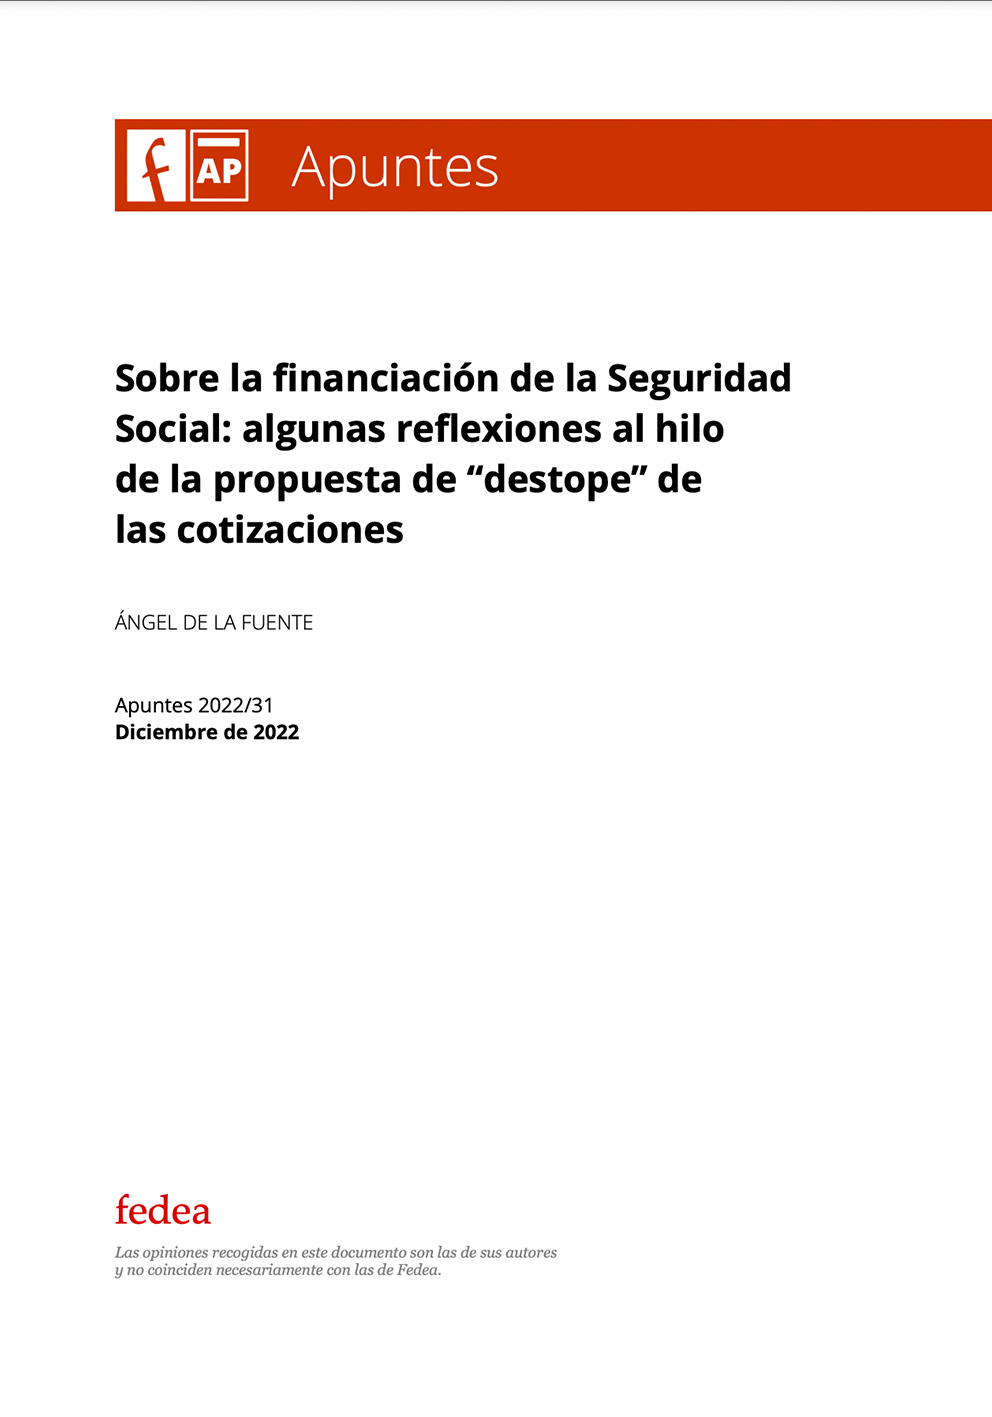 Sobre la financiación de la Seguridad Social: algunas reflexiones al hilo de la propuesta de “destope” de las cotizaciones